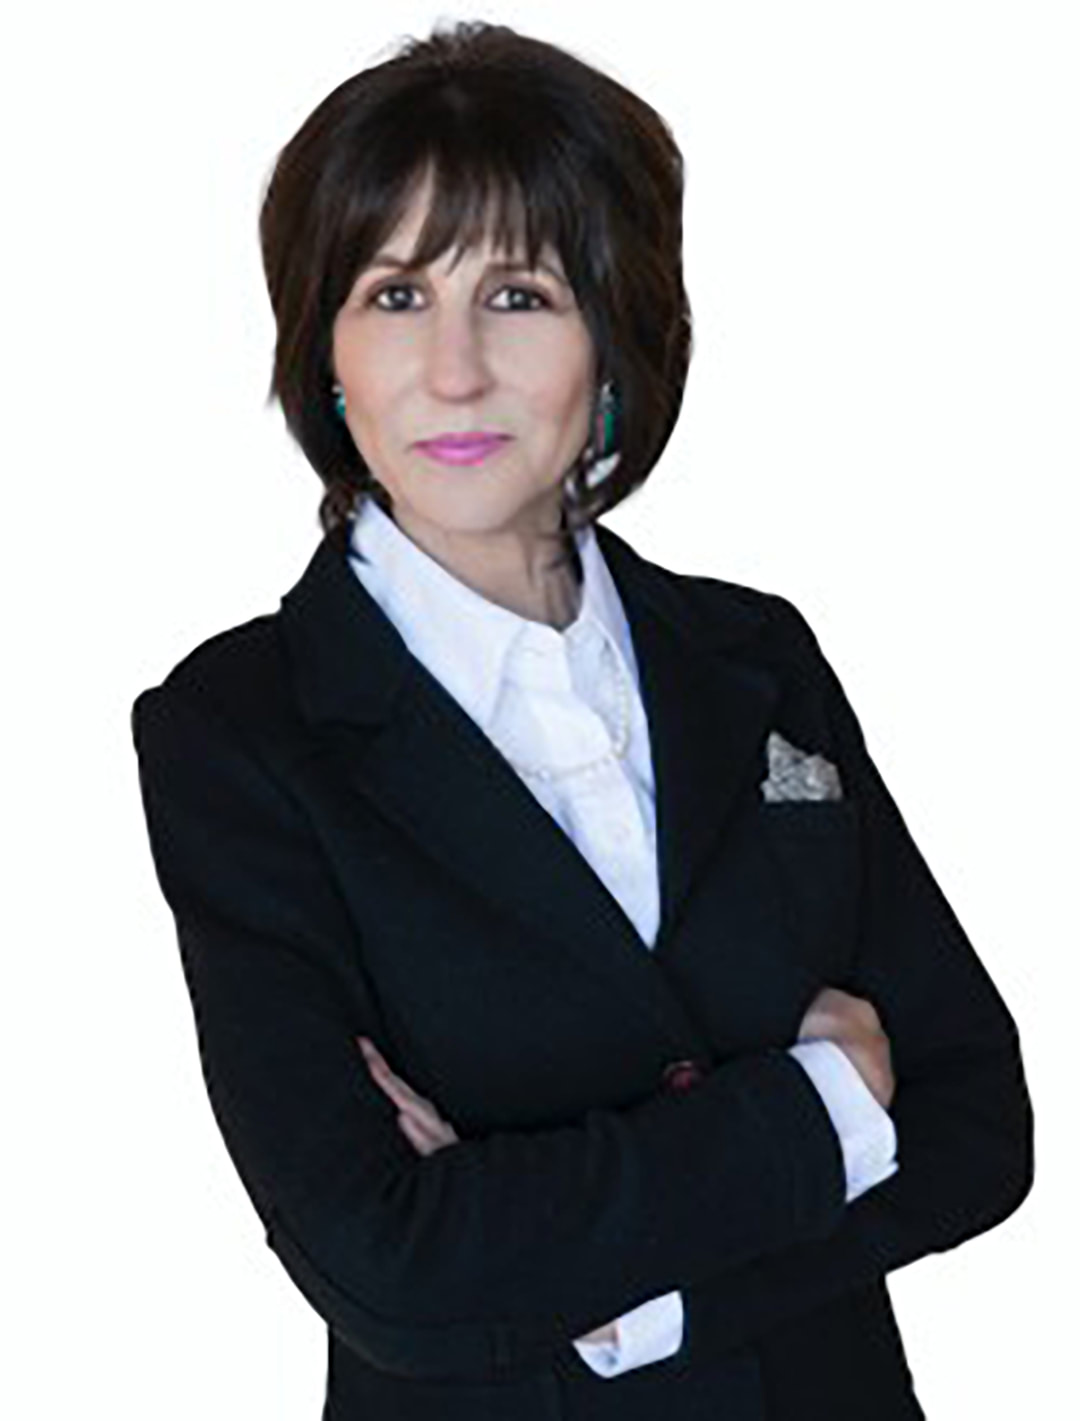 Author Michele Schneider